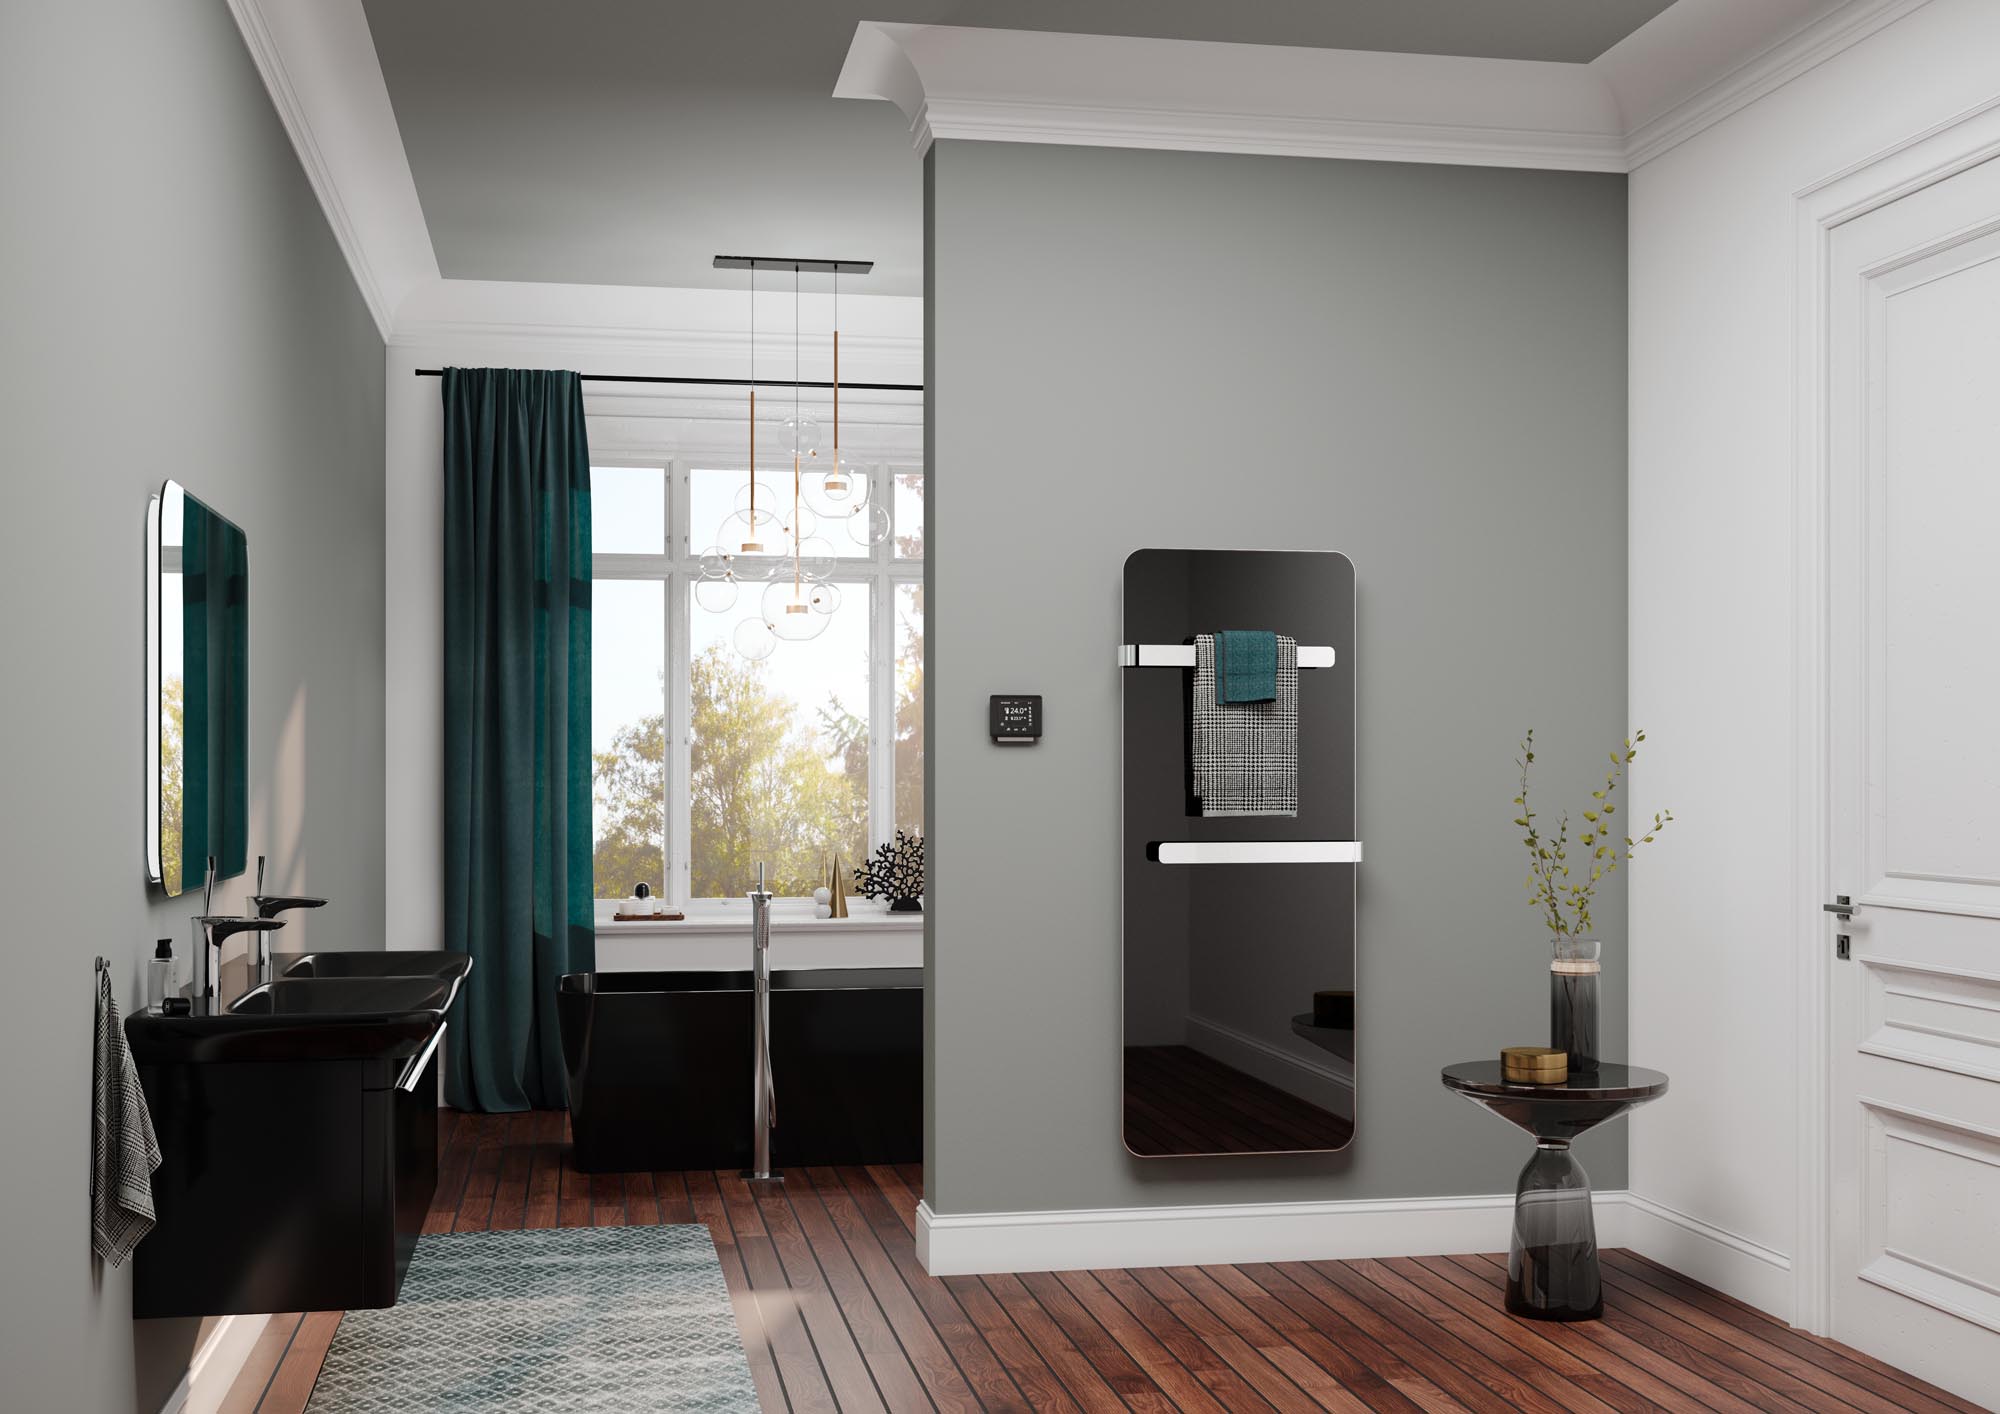 Grzejniki dekoracyjne i łazienkowe Kermi Elveo – niezwykle nowoczesny design. Ciepło dzięki podczerwieni.